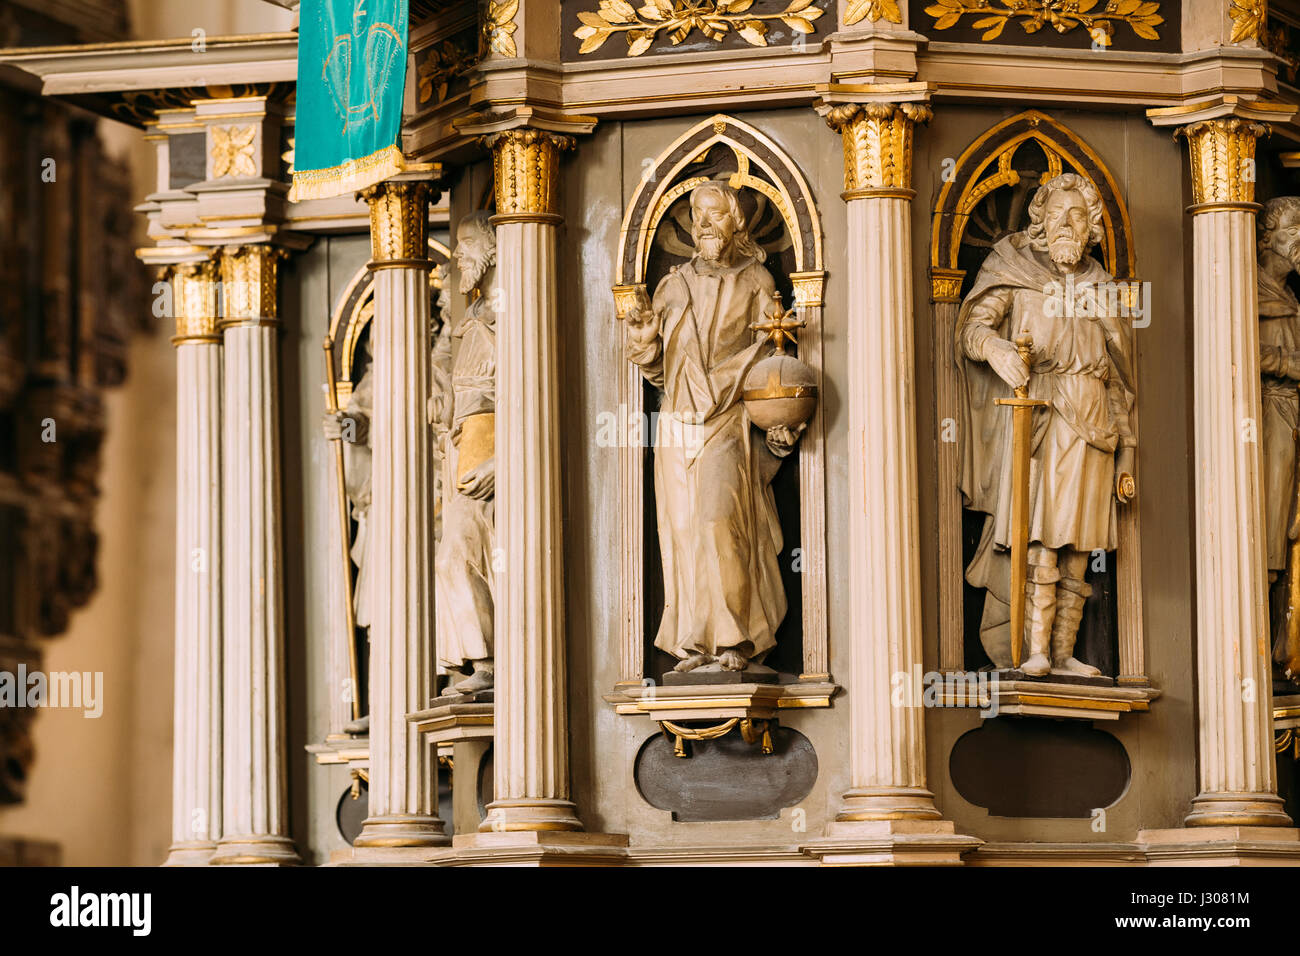 Riga, Lettonie - Juillet 2, 2016 : l'intérieur de la cathédrale de Riga Dome église cathédrale. Éléments décoratifs, statues sur la chaire. Piscine Banque D'Images